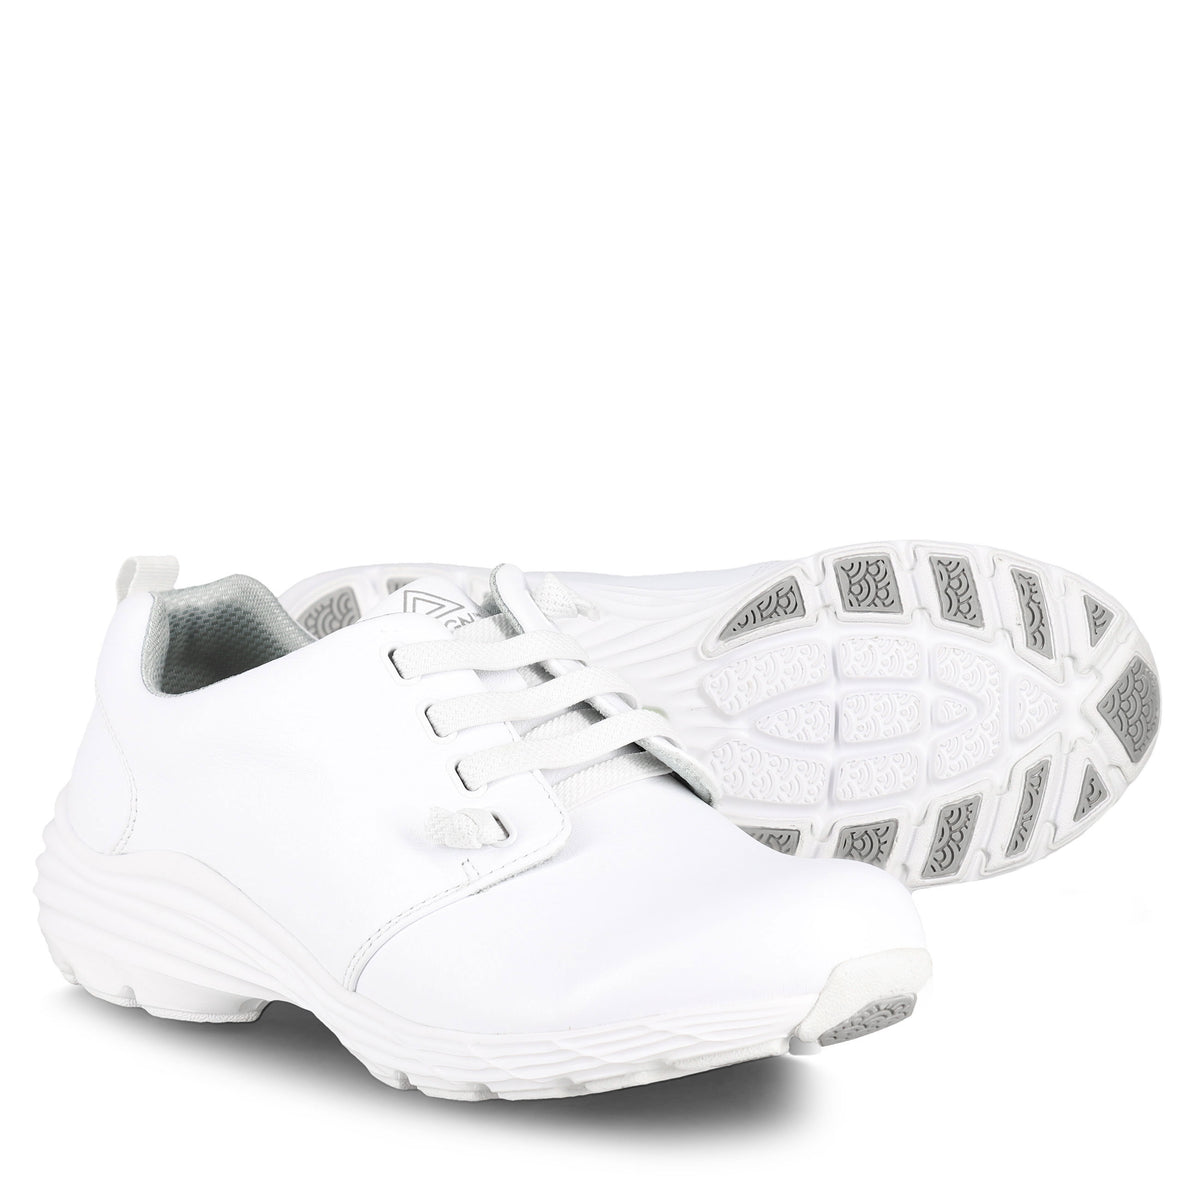 Nursemates Velocity White Shoes